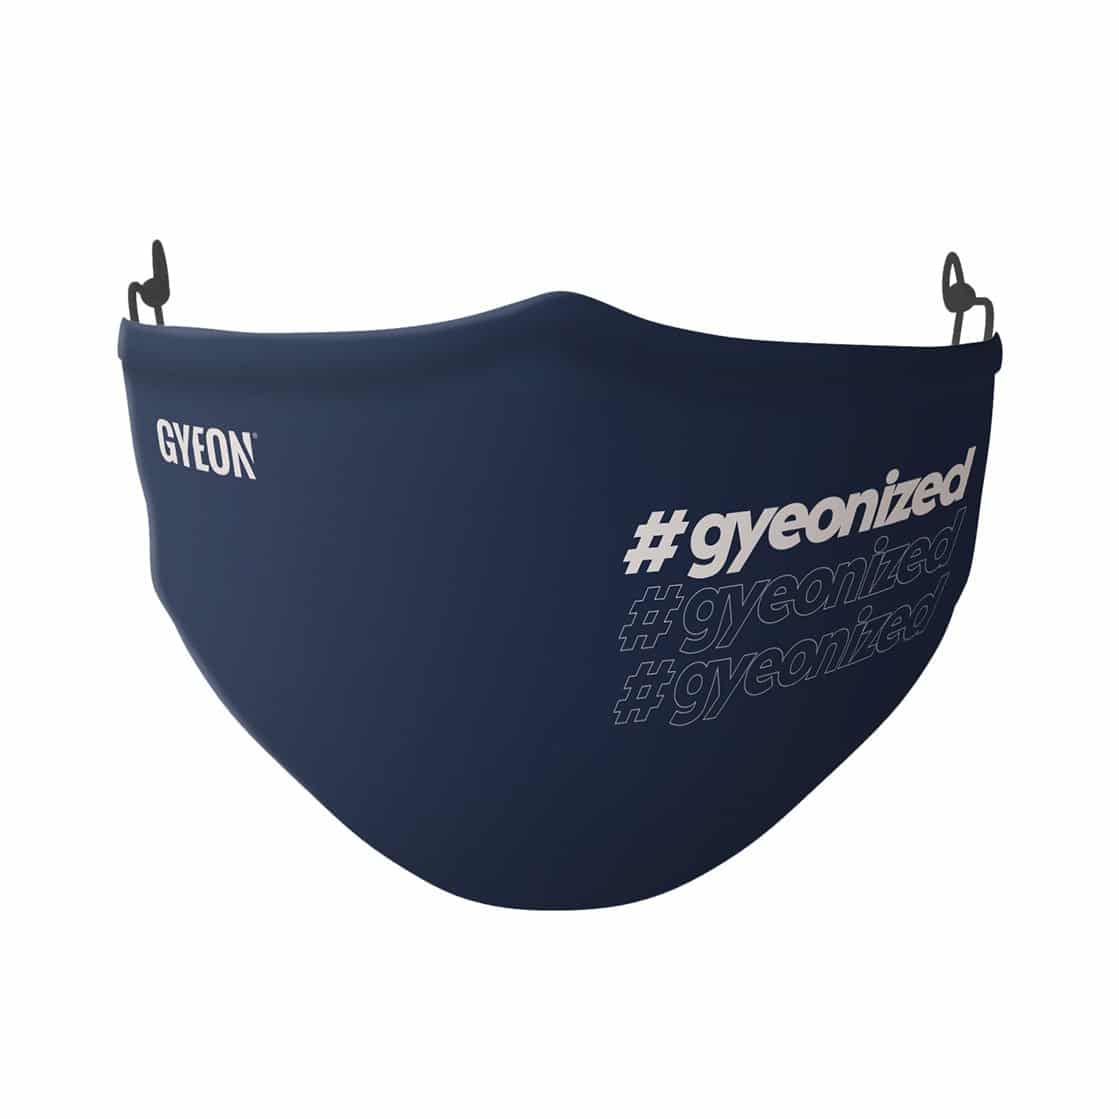 Gyeon Face Mask #gyeonized